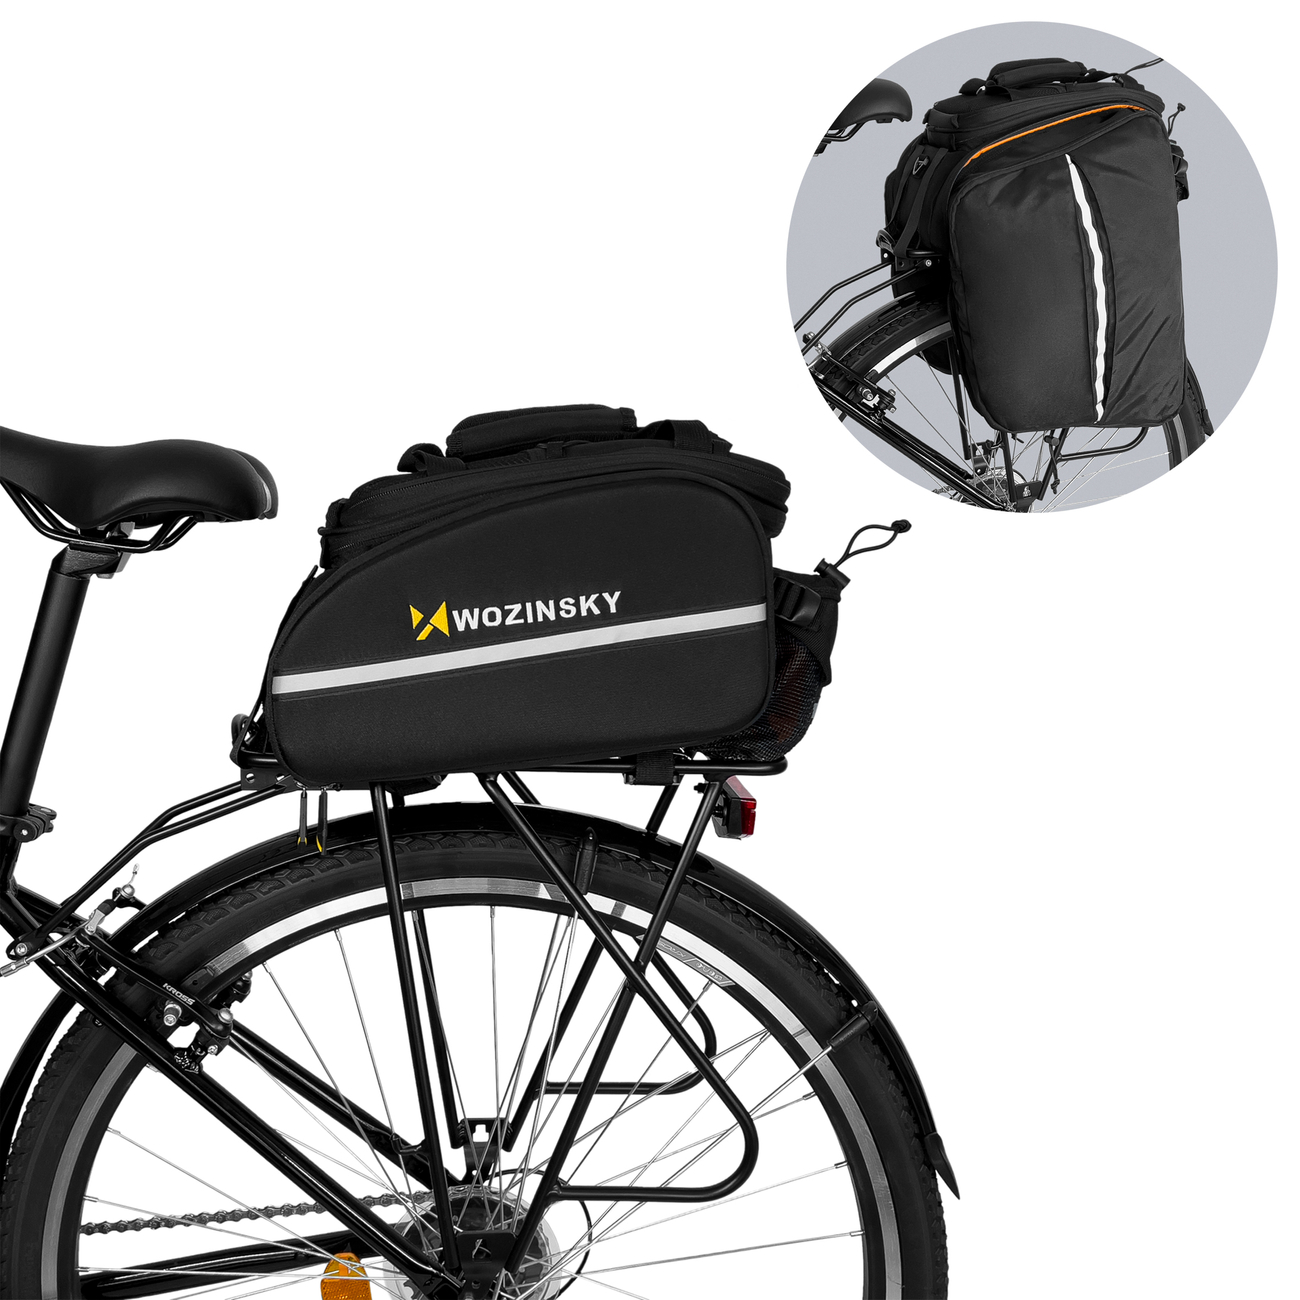 Uchwyt rowerowy Wozinsky torba rowerowa na baganik 35L WBB19BK czarny Vivo X9